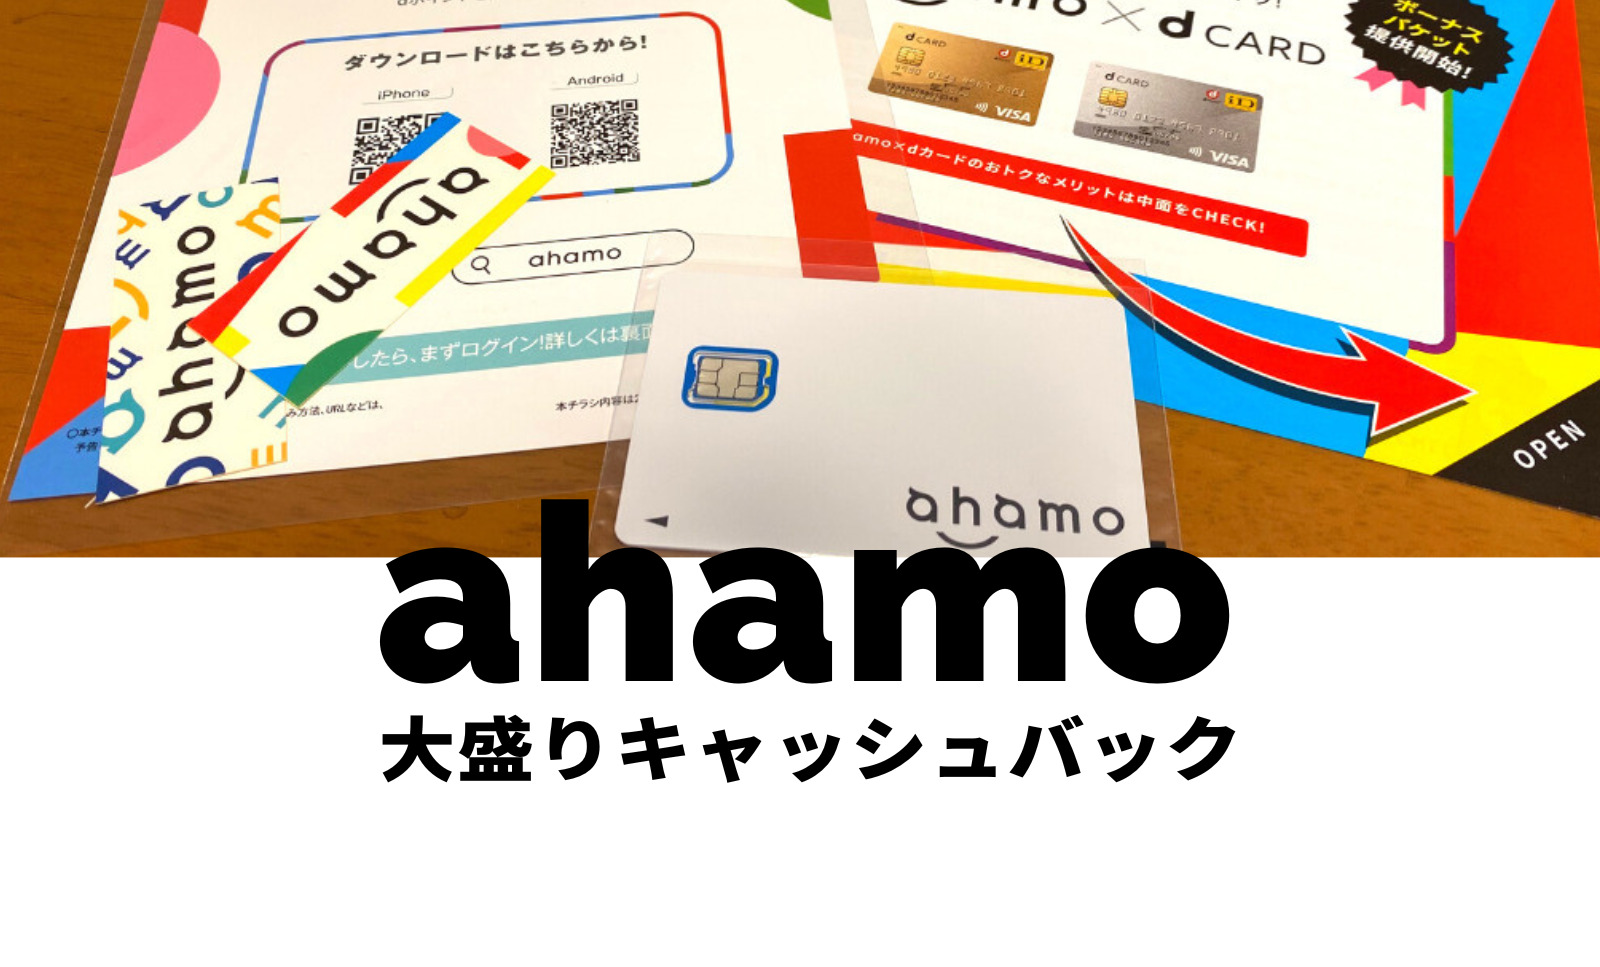 ahamo(アハモ)大盛りオプションが実質0円&無料になるdポイントキャッシュバックを開催のサムネイル画像